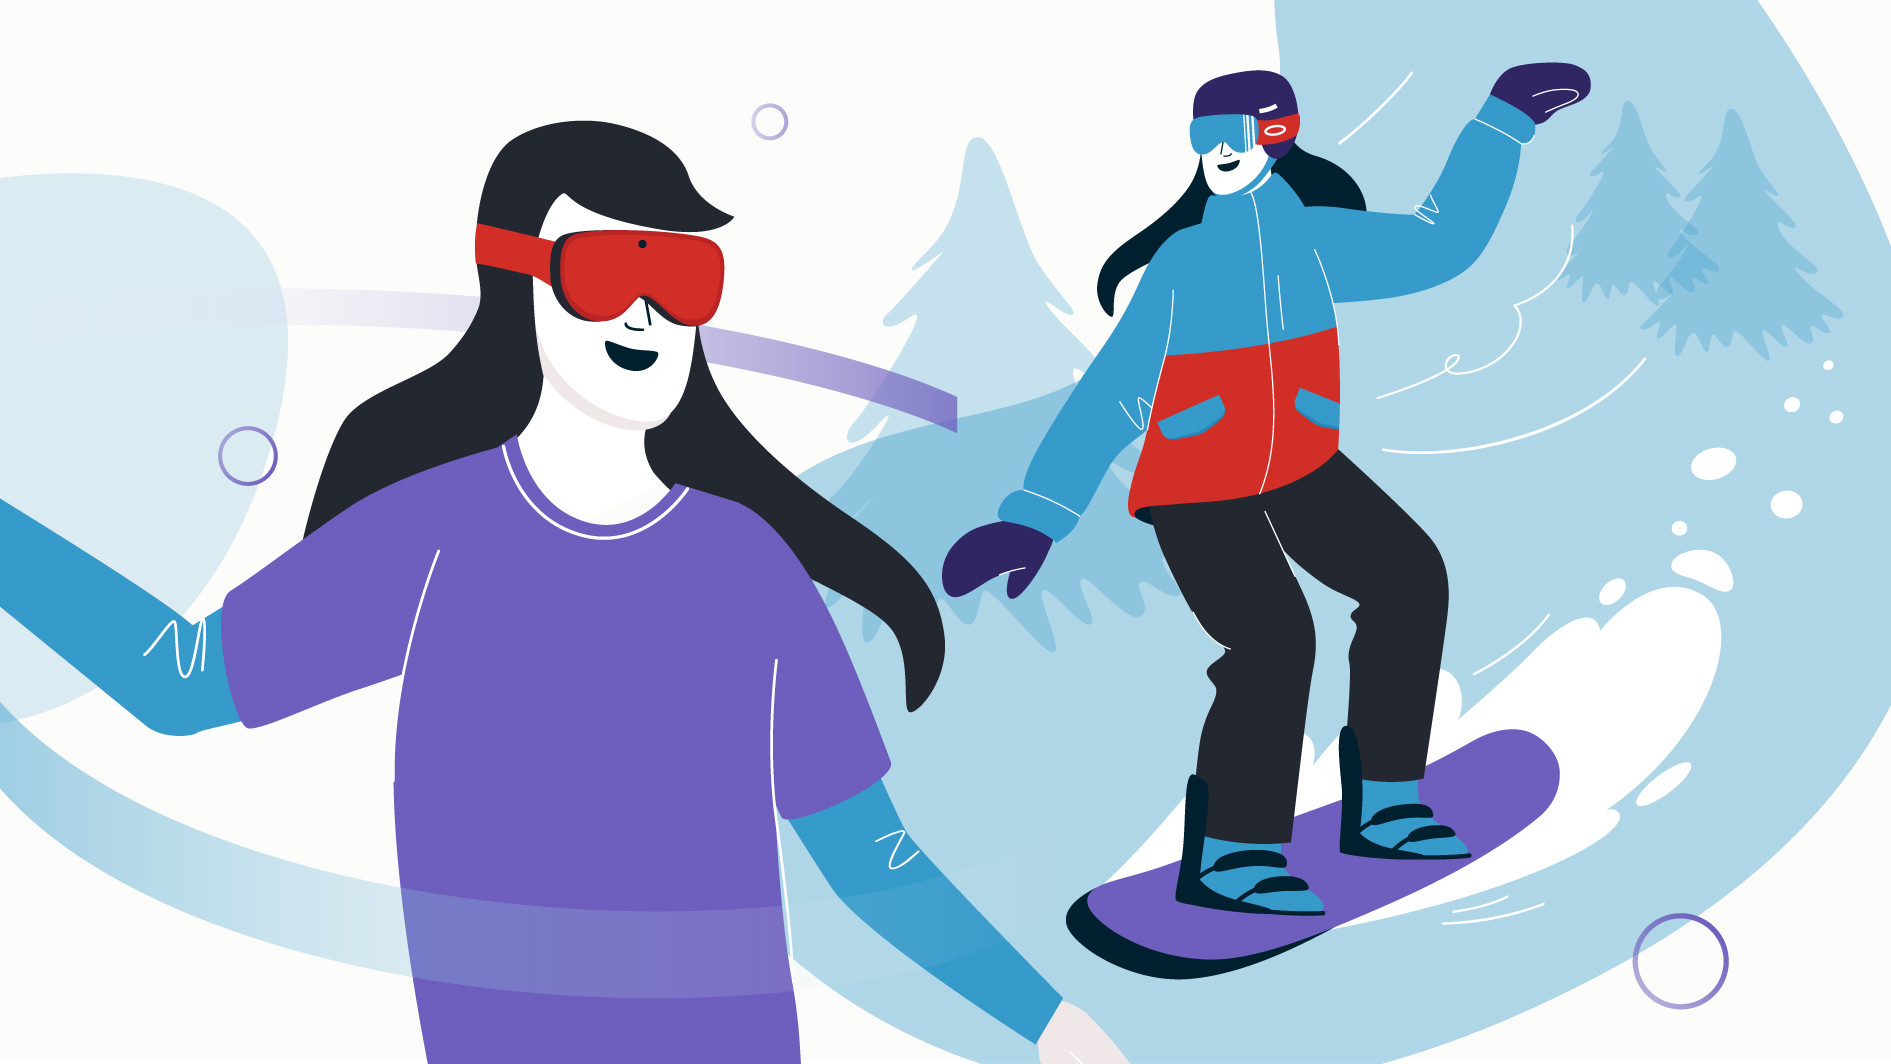 Comparaison entre une athlète en planche à neige et une personne utilisant un casque de réalité virtuelle (VR)